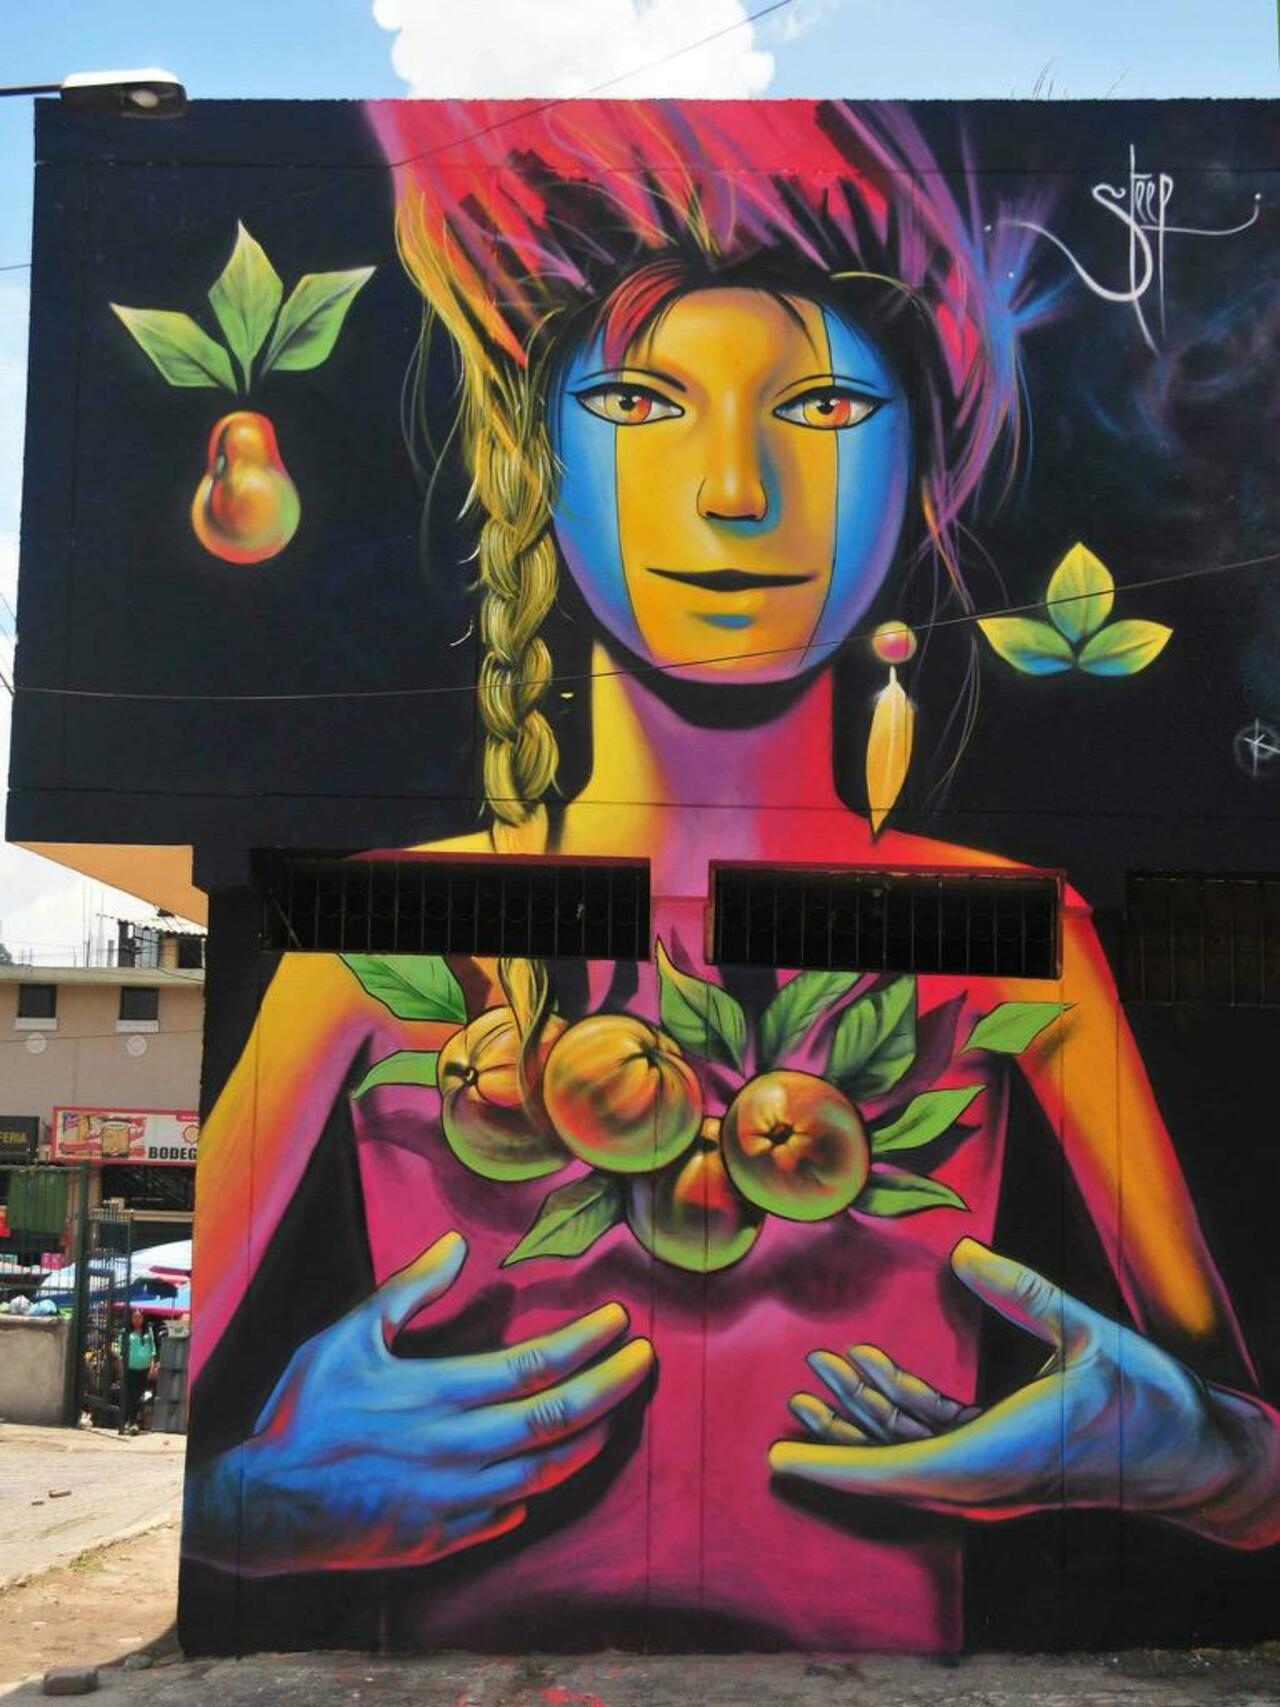 JewelNiles1: JewelNiles1: Street Art by Steep

#art #graffiti #mural #streetart http://t.co/ZWj2jpmLwc